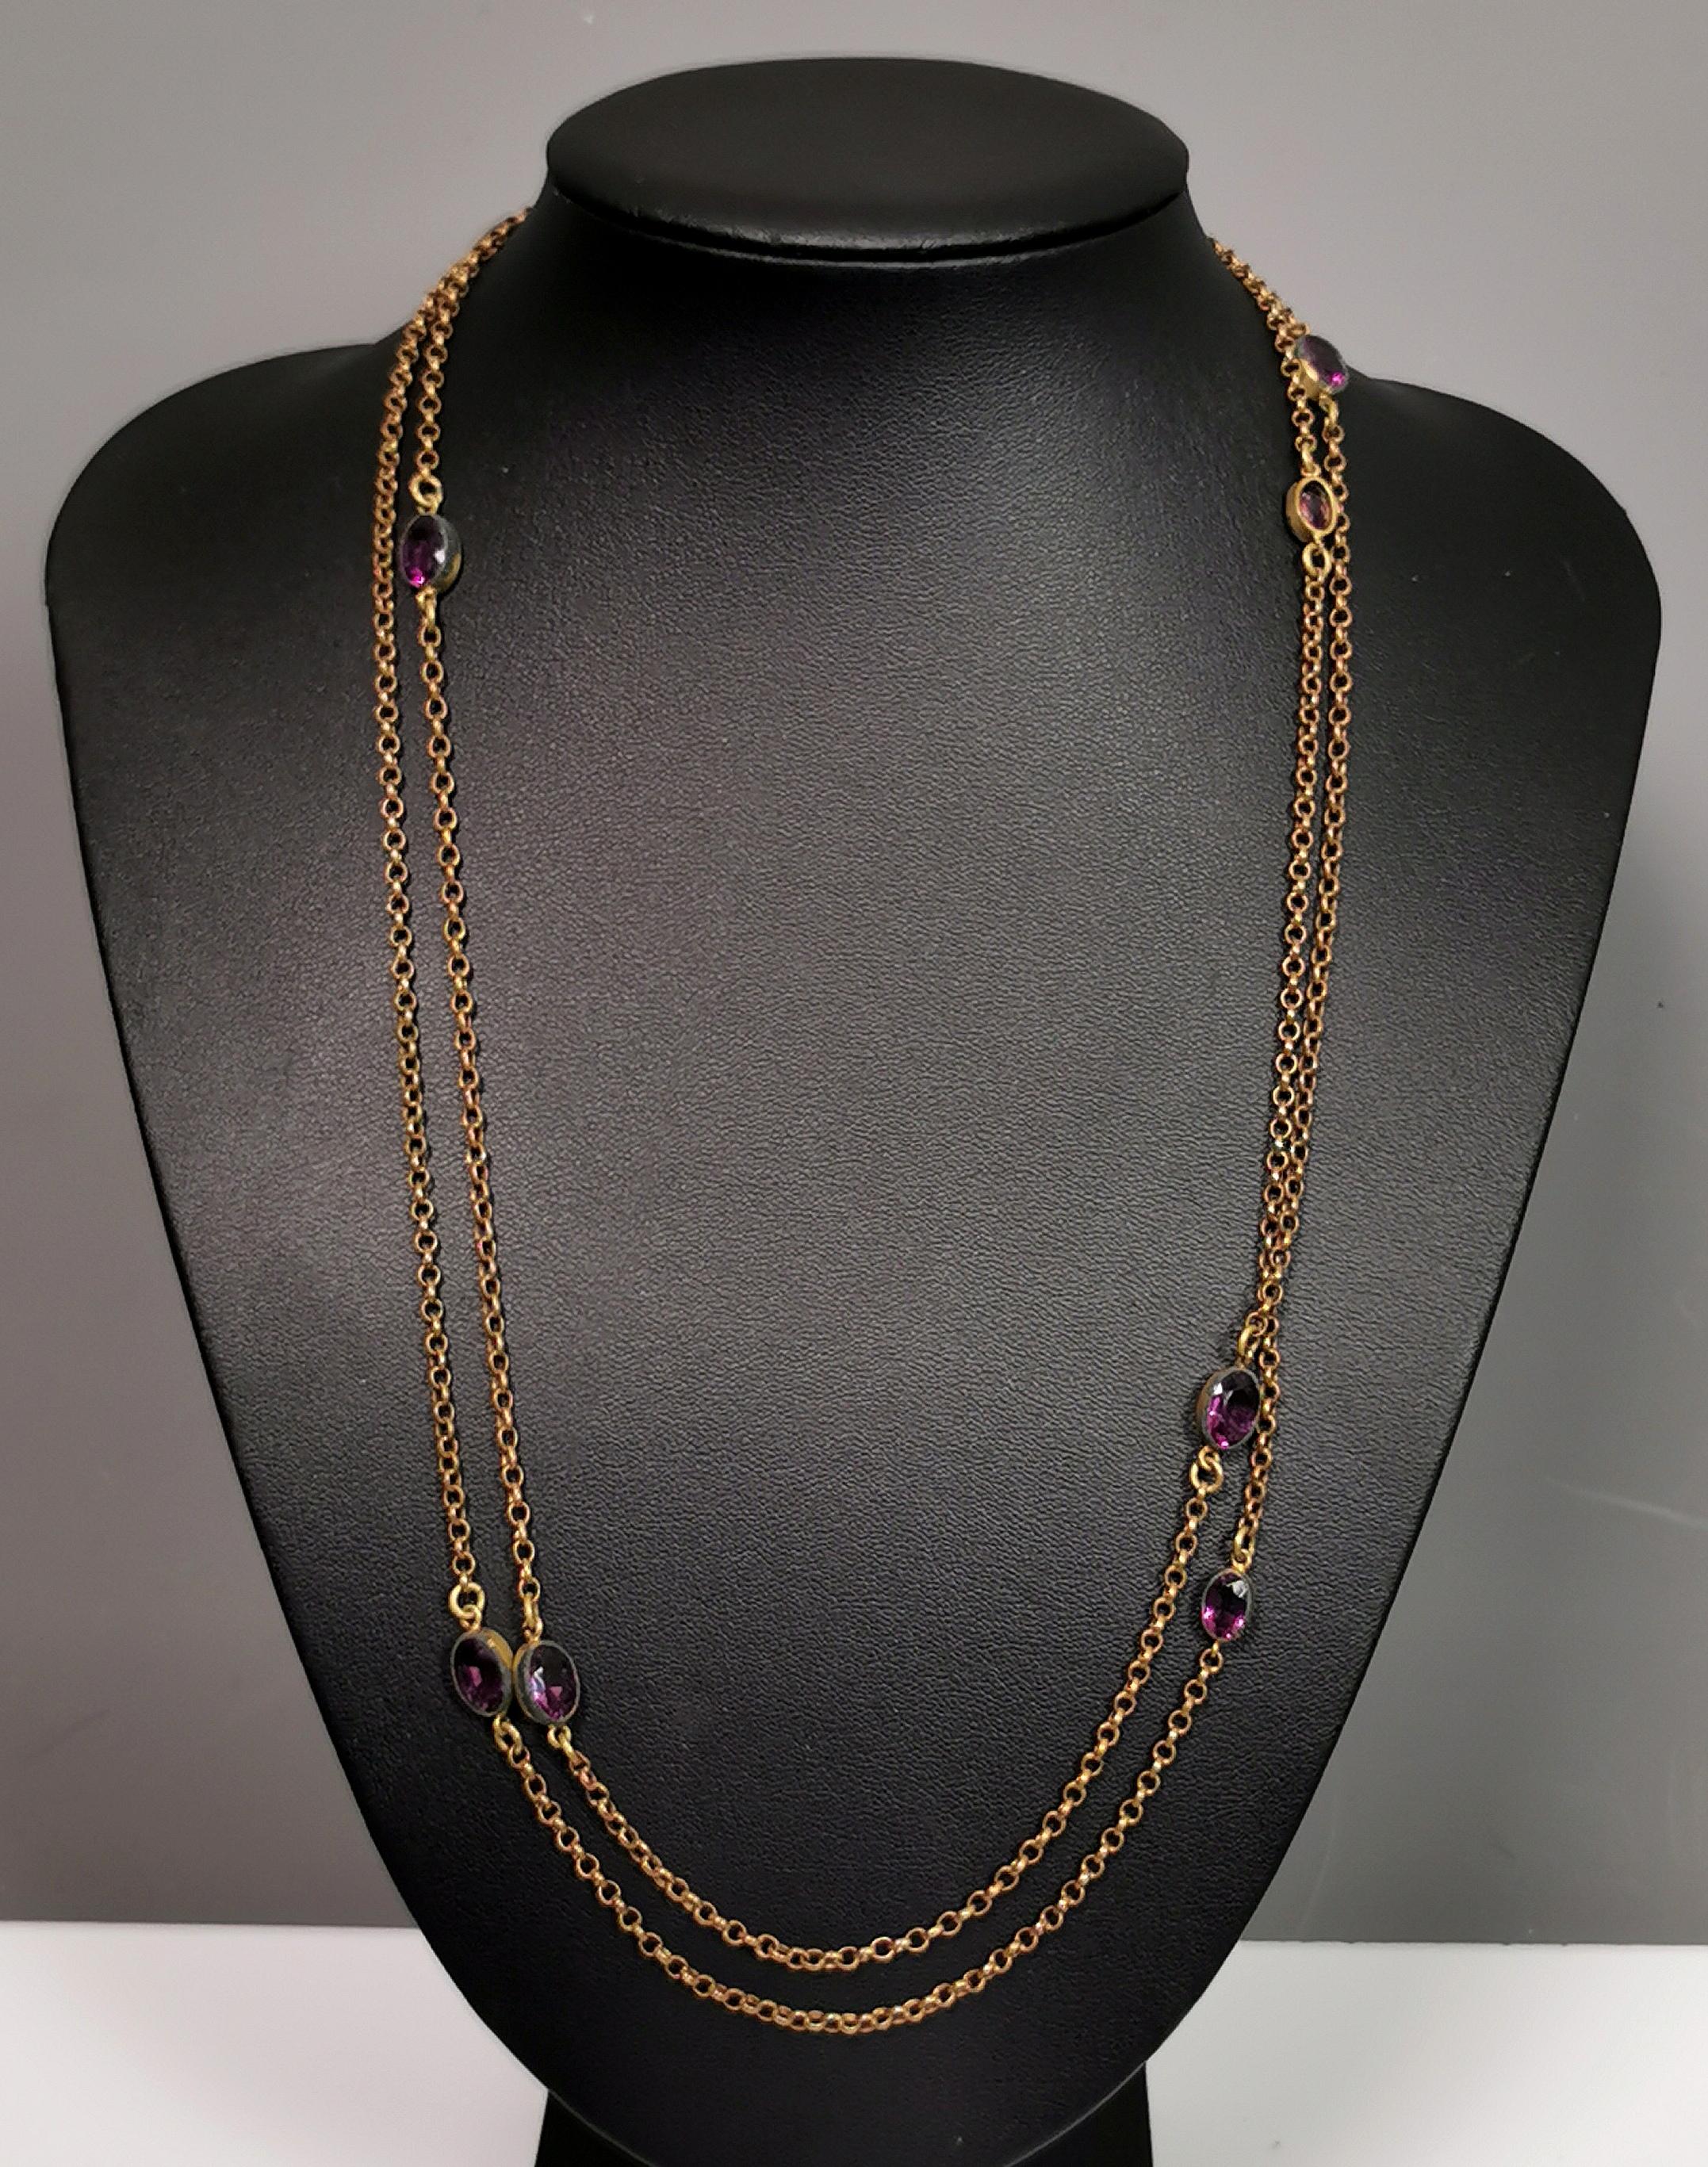 Antique Edwardian purple paste sautoir necklace, gold plated long chain  For Sale 2